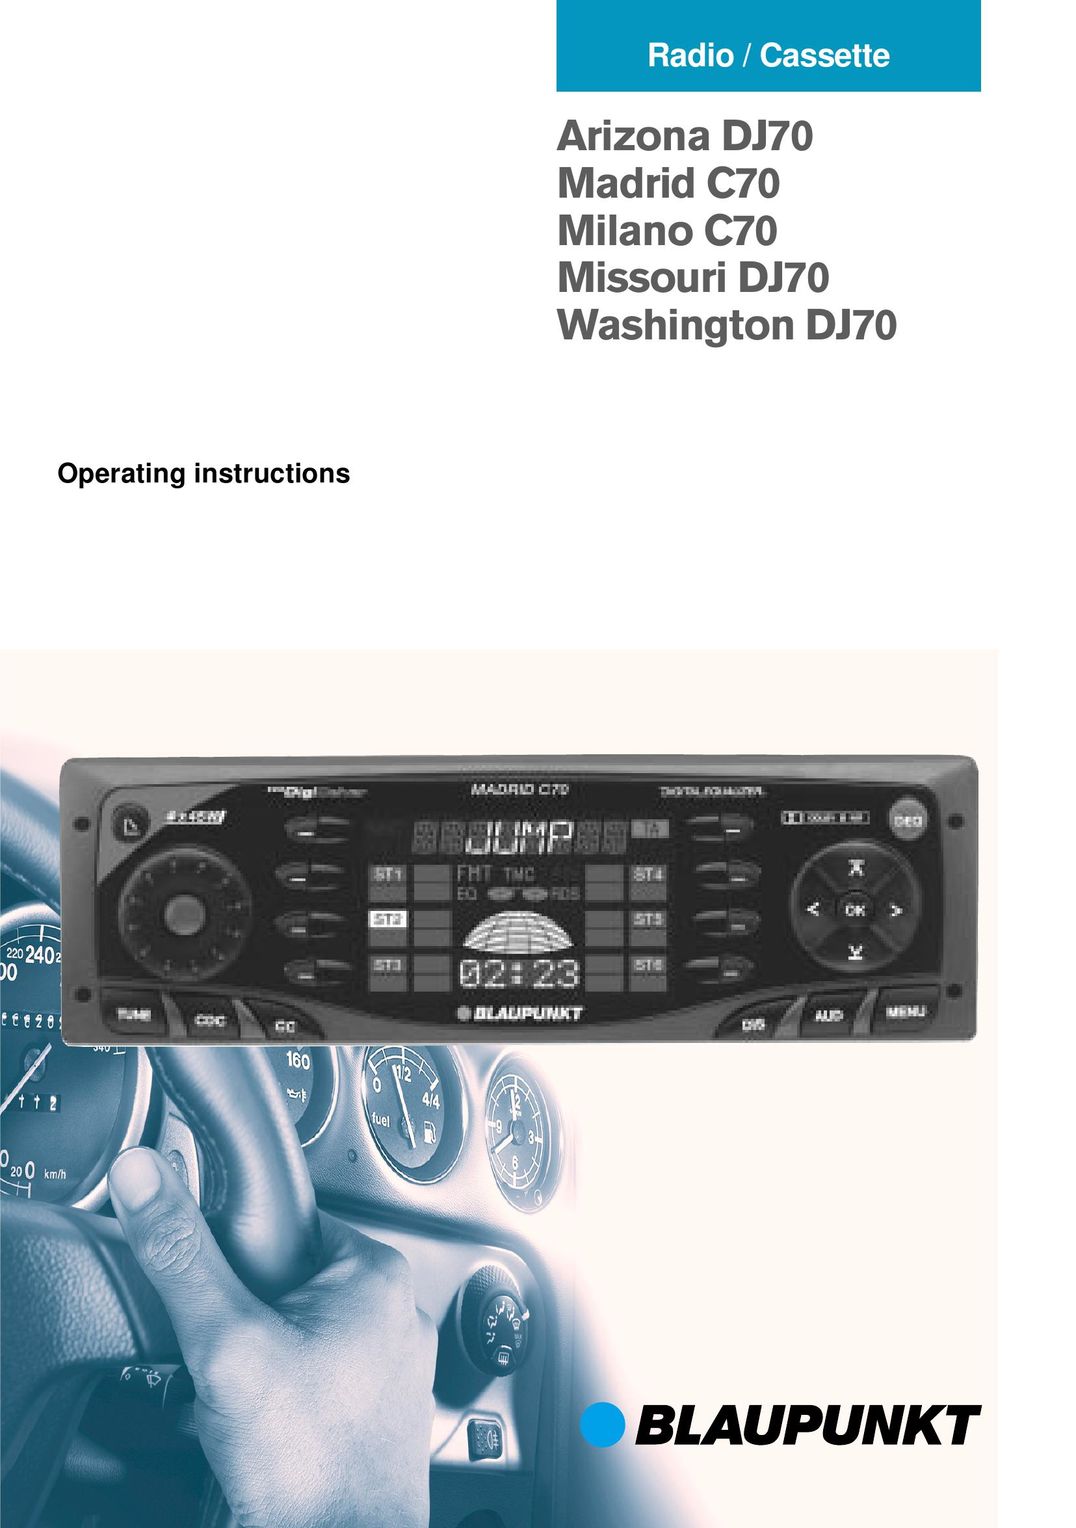 Blaupunkt Arizona DJ70 Car Stereo System User Manual